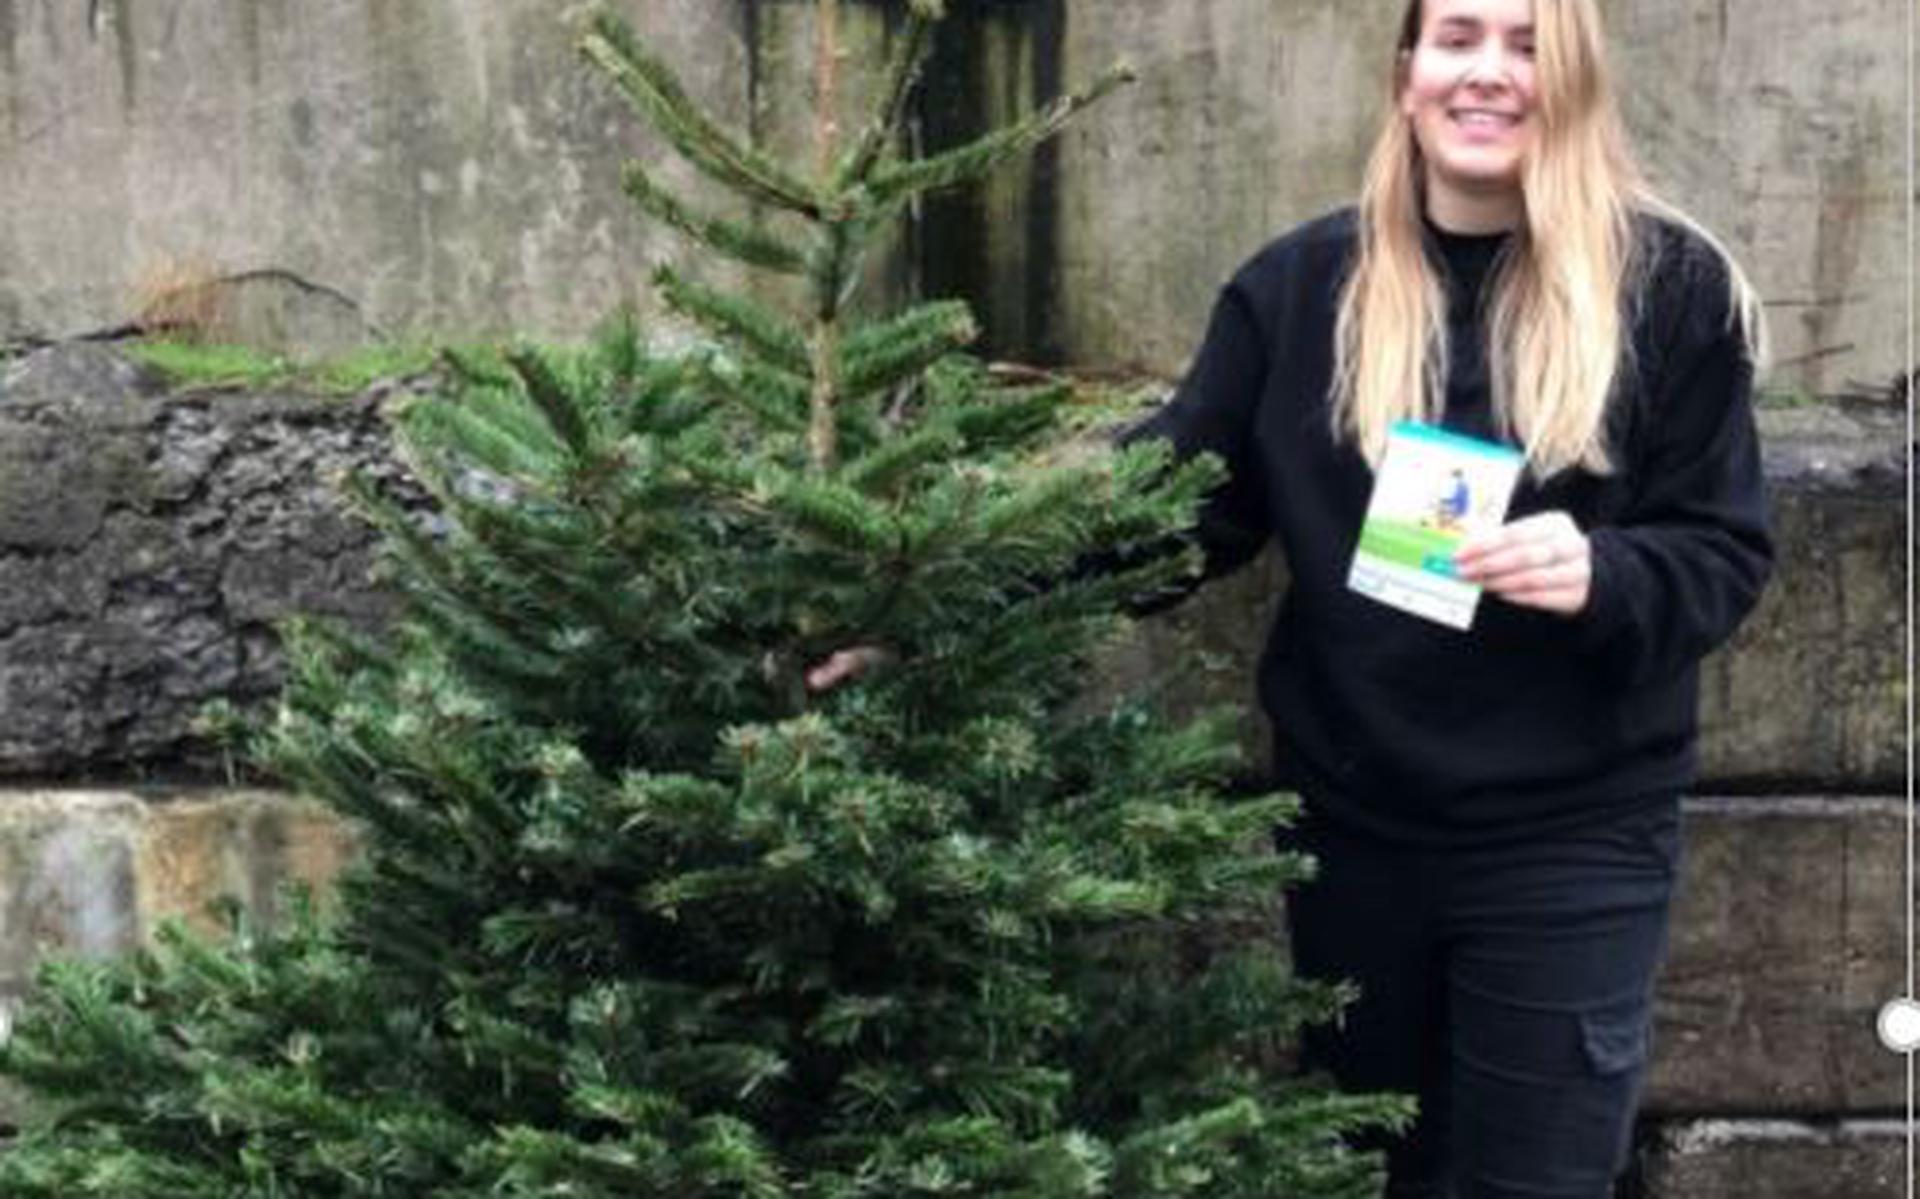 Demi is de eerste inwoner van die boompjespakket krijgt voor inleveren van haar kerstboom zonder kluit - Flevopost